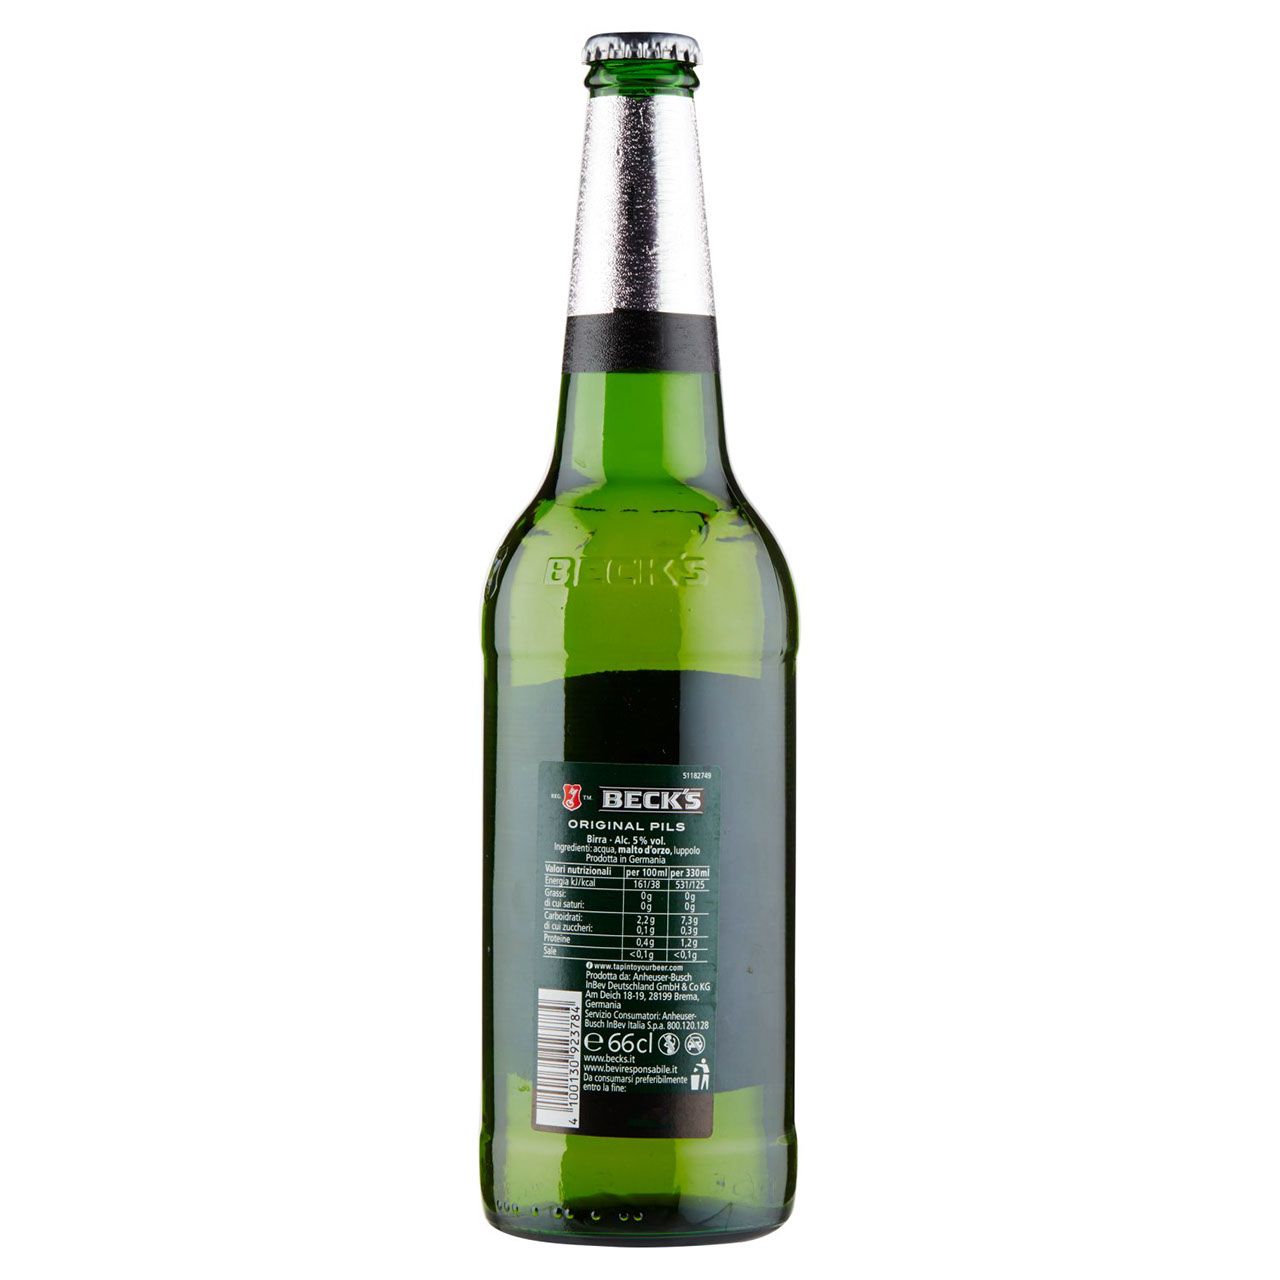 BECK'S Birra pilsner tedesca bottiglia 66cl